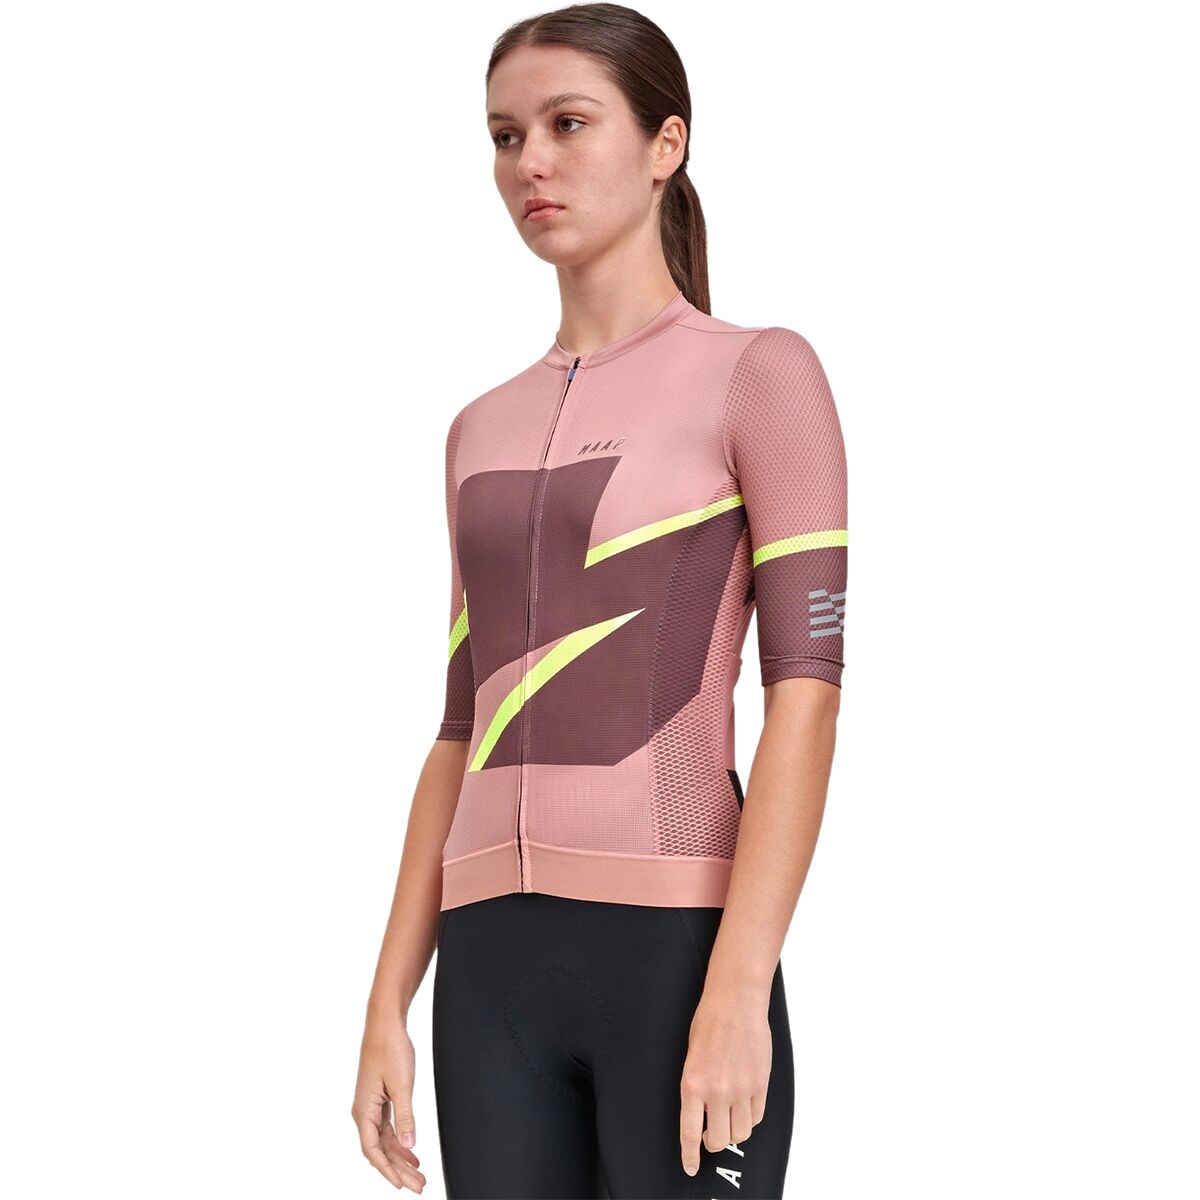 MAAP Evolve 3D Pro Air Short-Sleeve Jersey - Women's - Bike